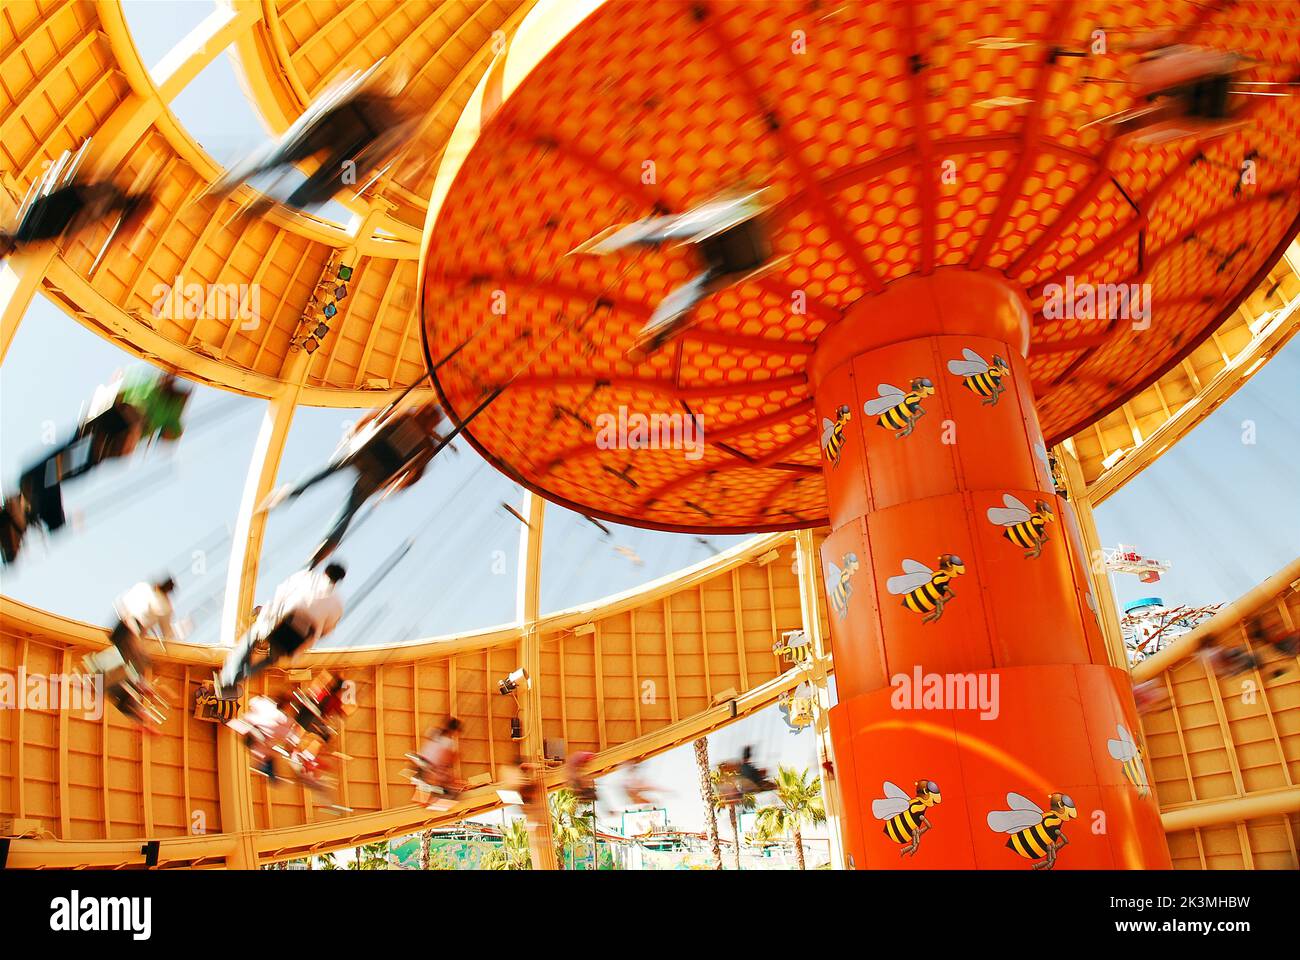 Les cavaliers font des cercles rapides lorsqu'ils volent sur le swing de l'Orange Stinger, en forme d'orange, qui était autrefois une attraction de Disneyland California Adventure Banque D'Images